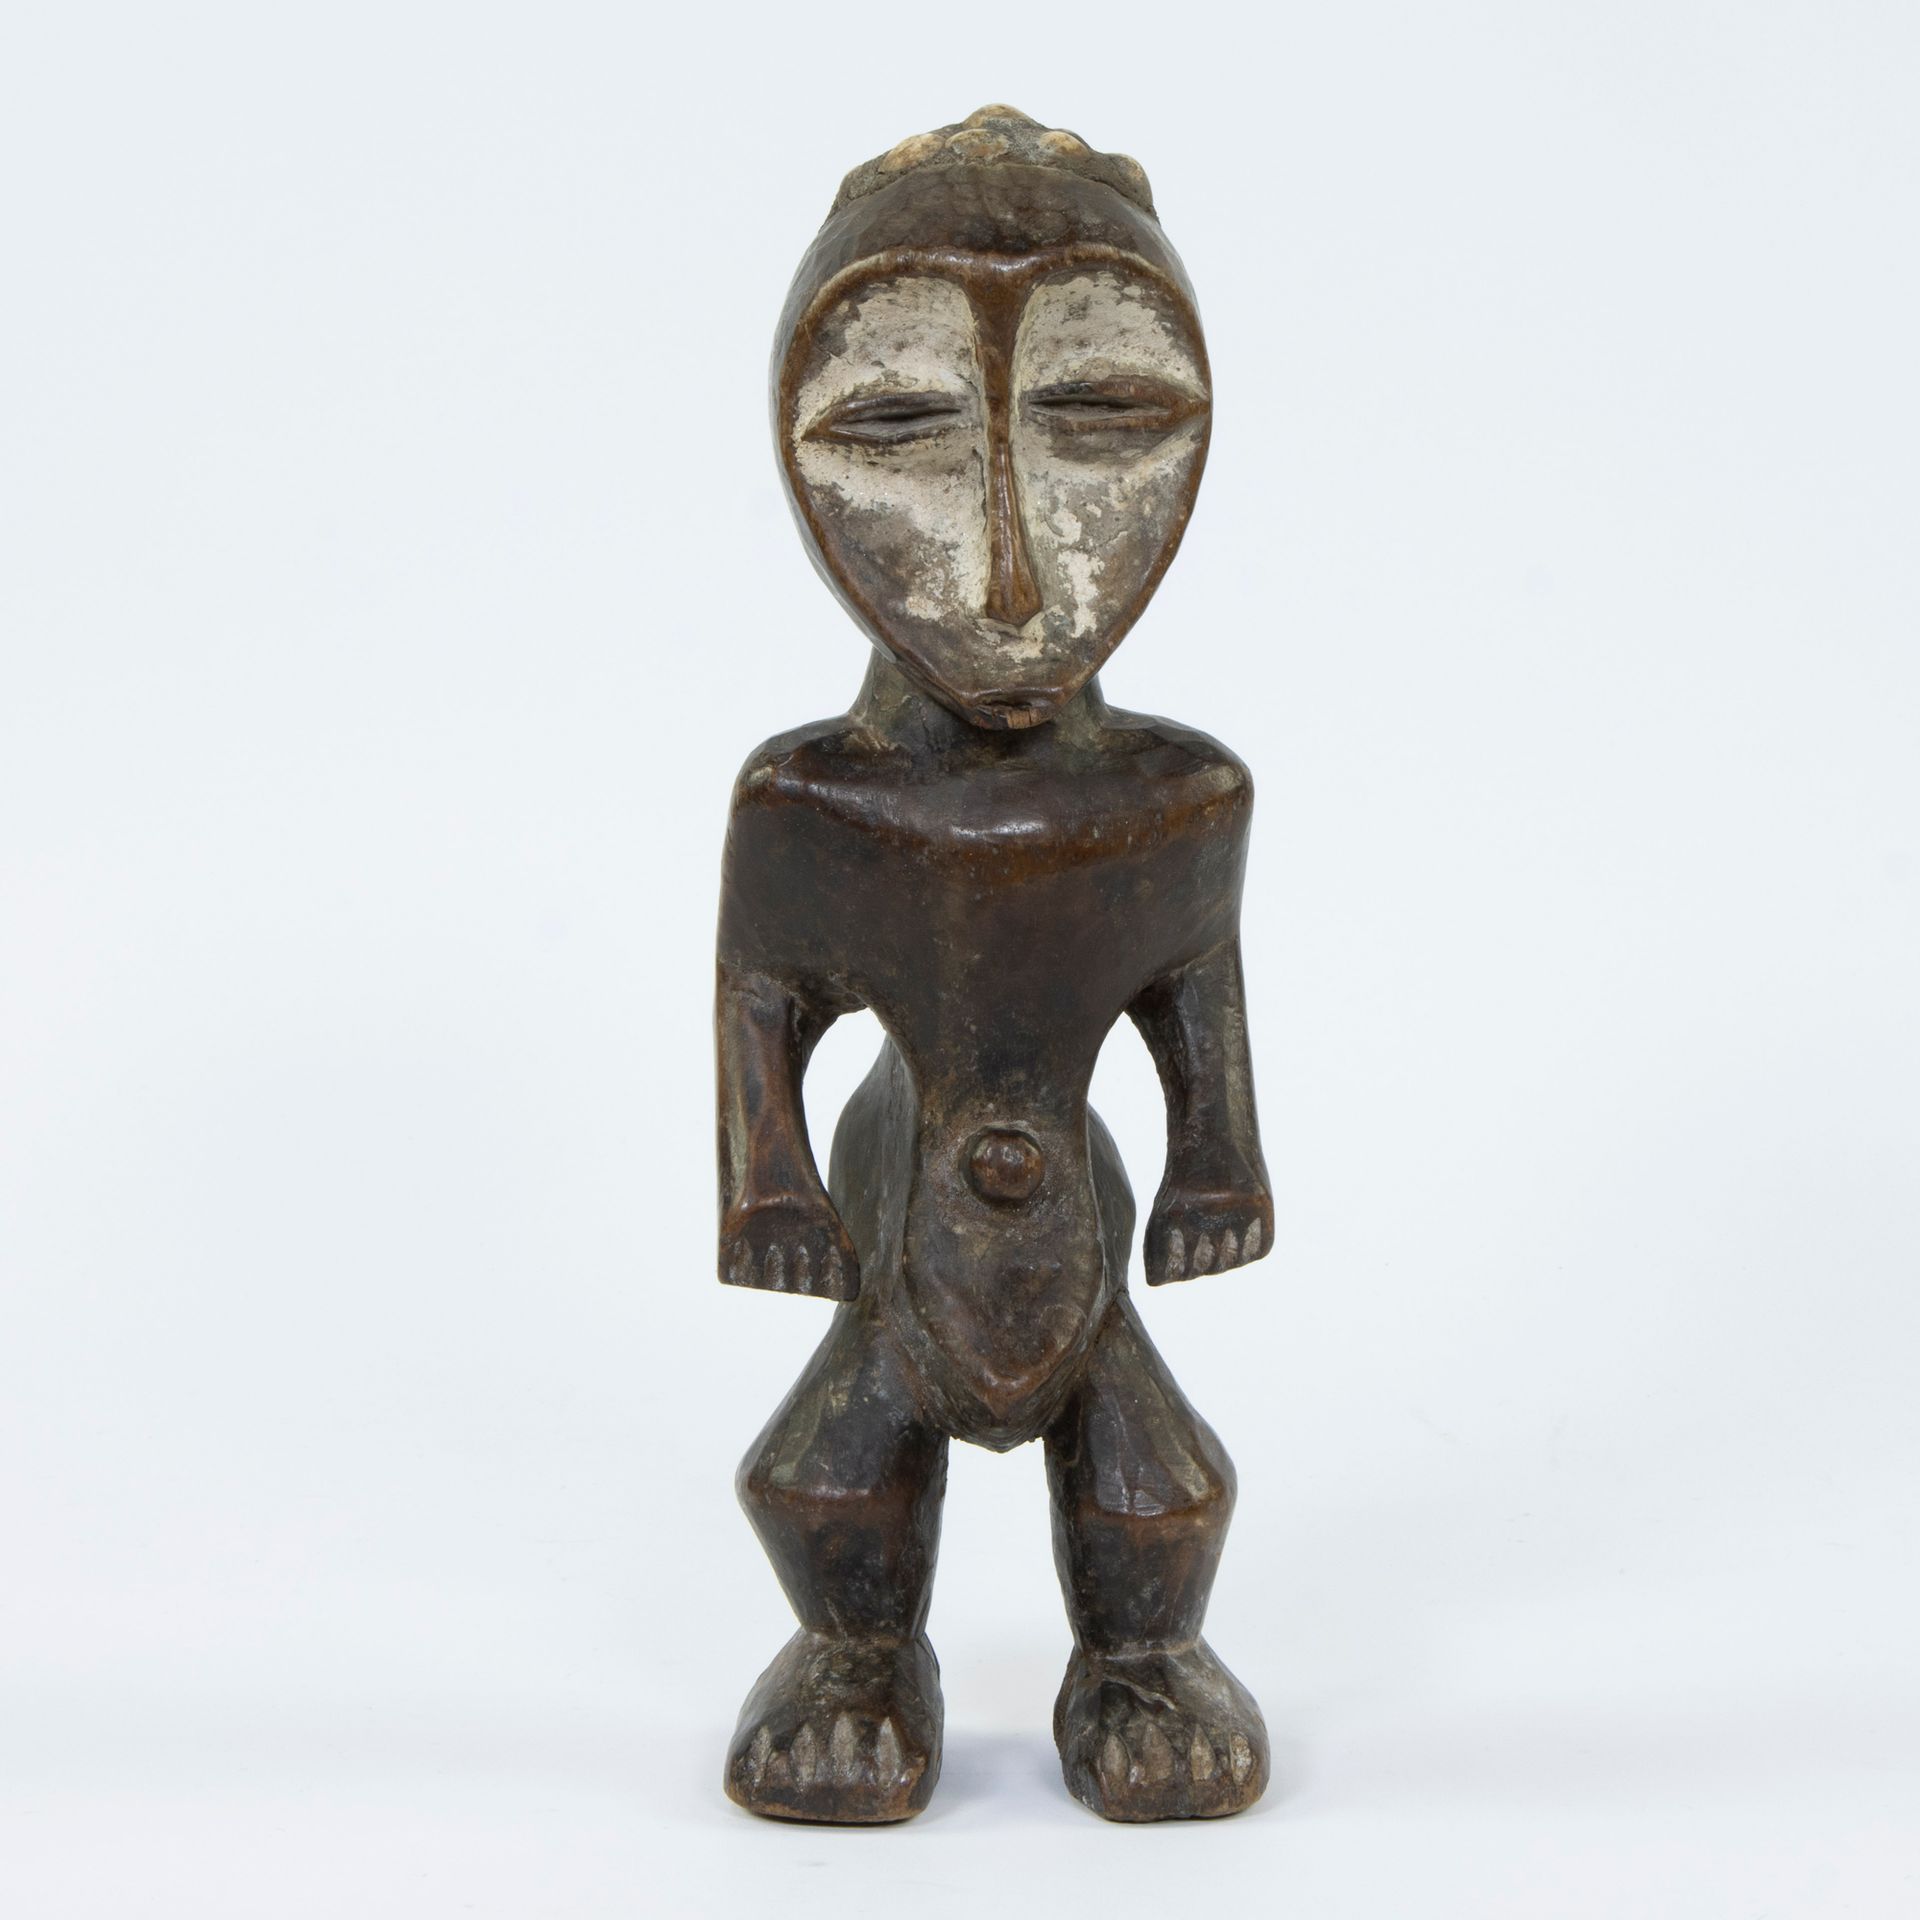 Null Figurine de pouvoir LUBA avec kaolin, Congo, circa 1950-'60
LUBA krachtfigu&hellip;